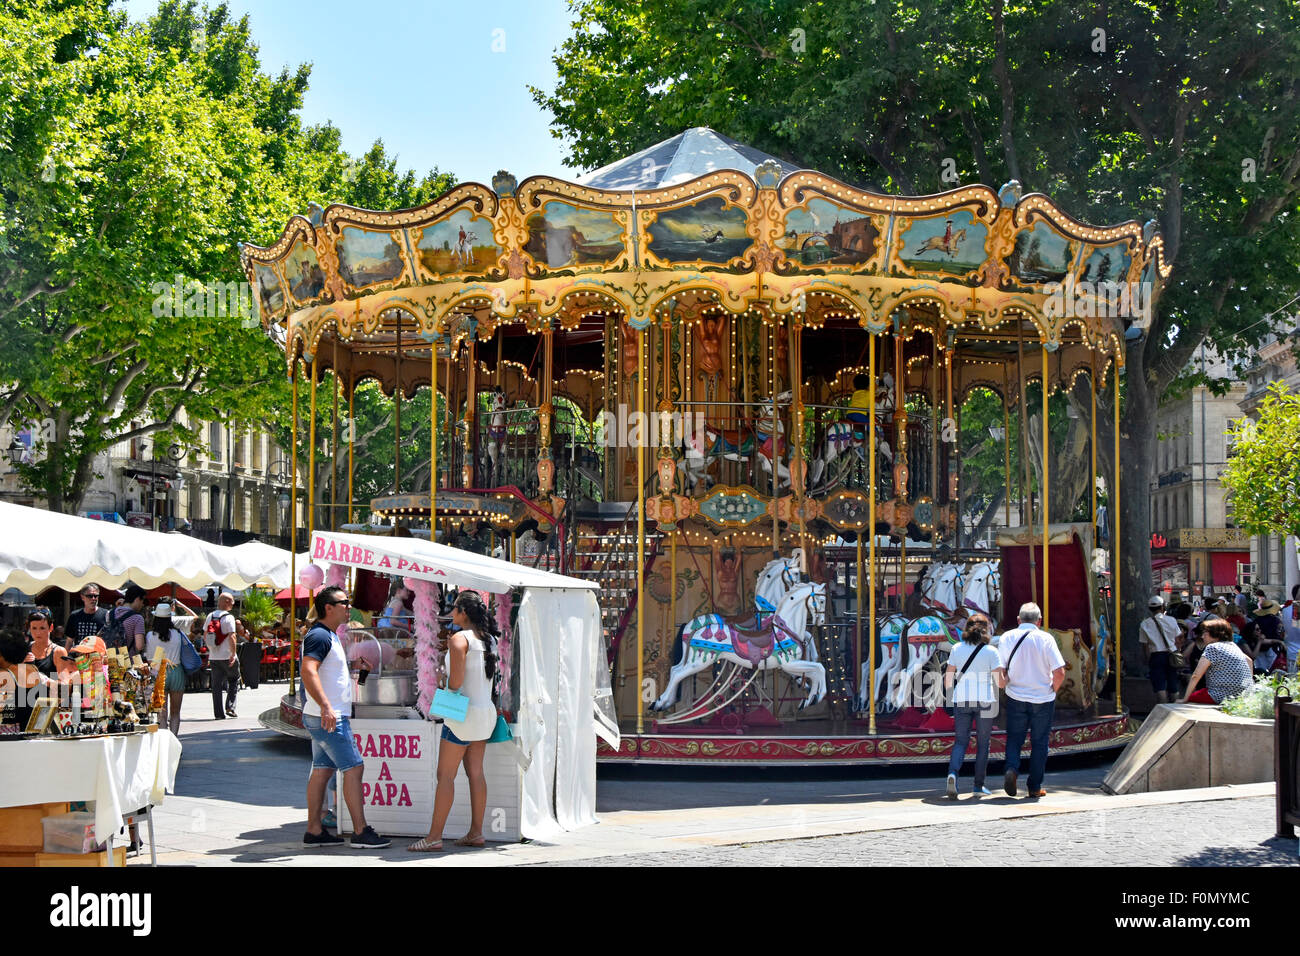 Festival von Avignon Französisch altmodisches Karussell mit Treppen während der jährlichen Juli Arts Festival im Zentrum der Stadt Frankreich gesehen Stockfoto